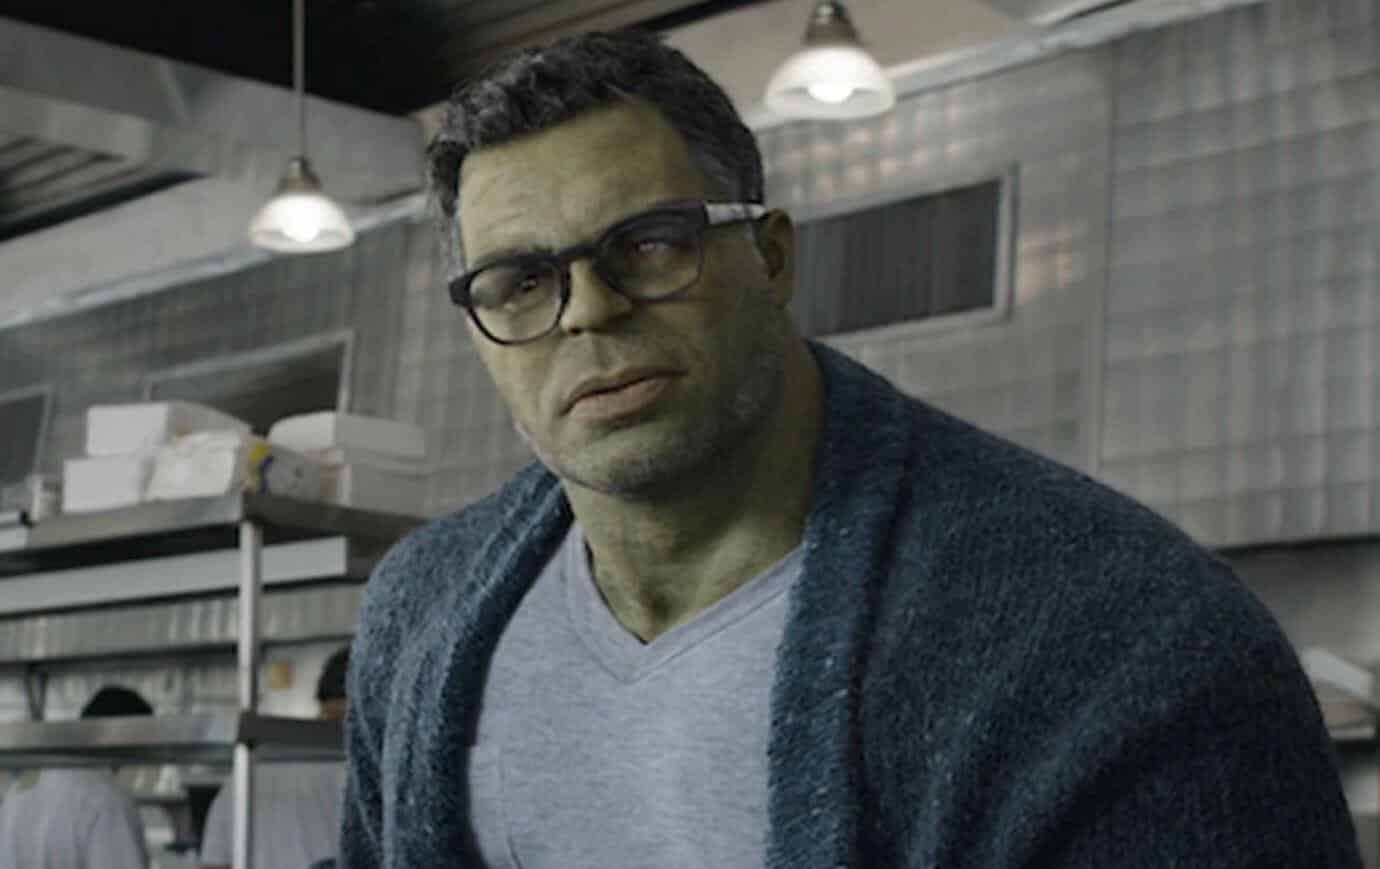 A still of the Hulk from Avengers Endgame